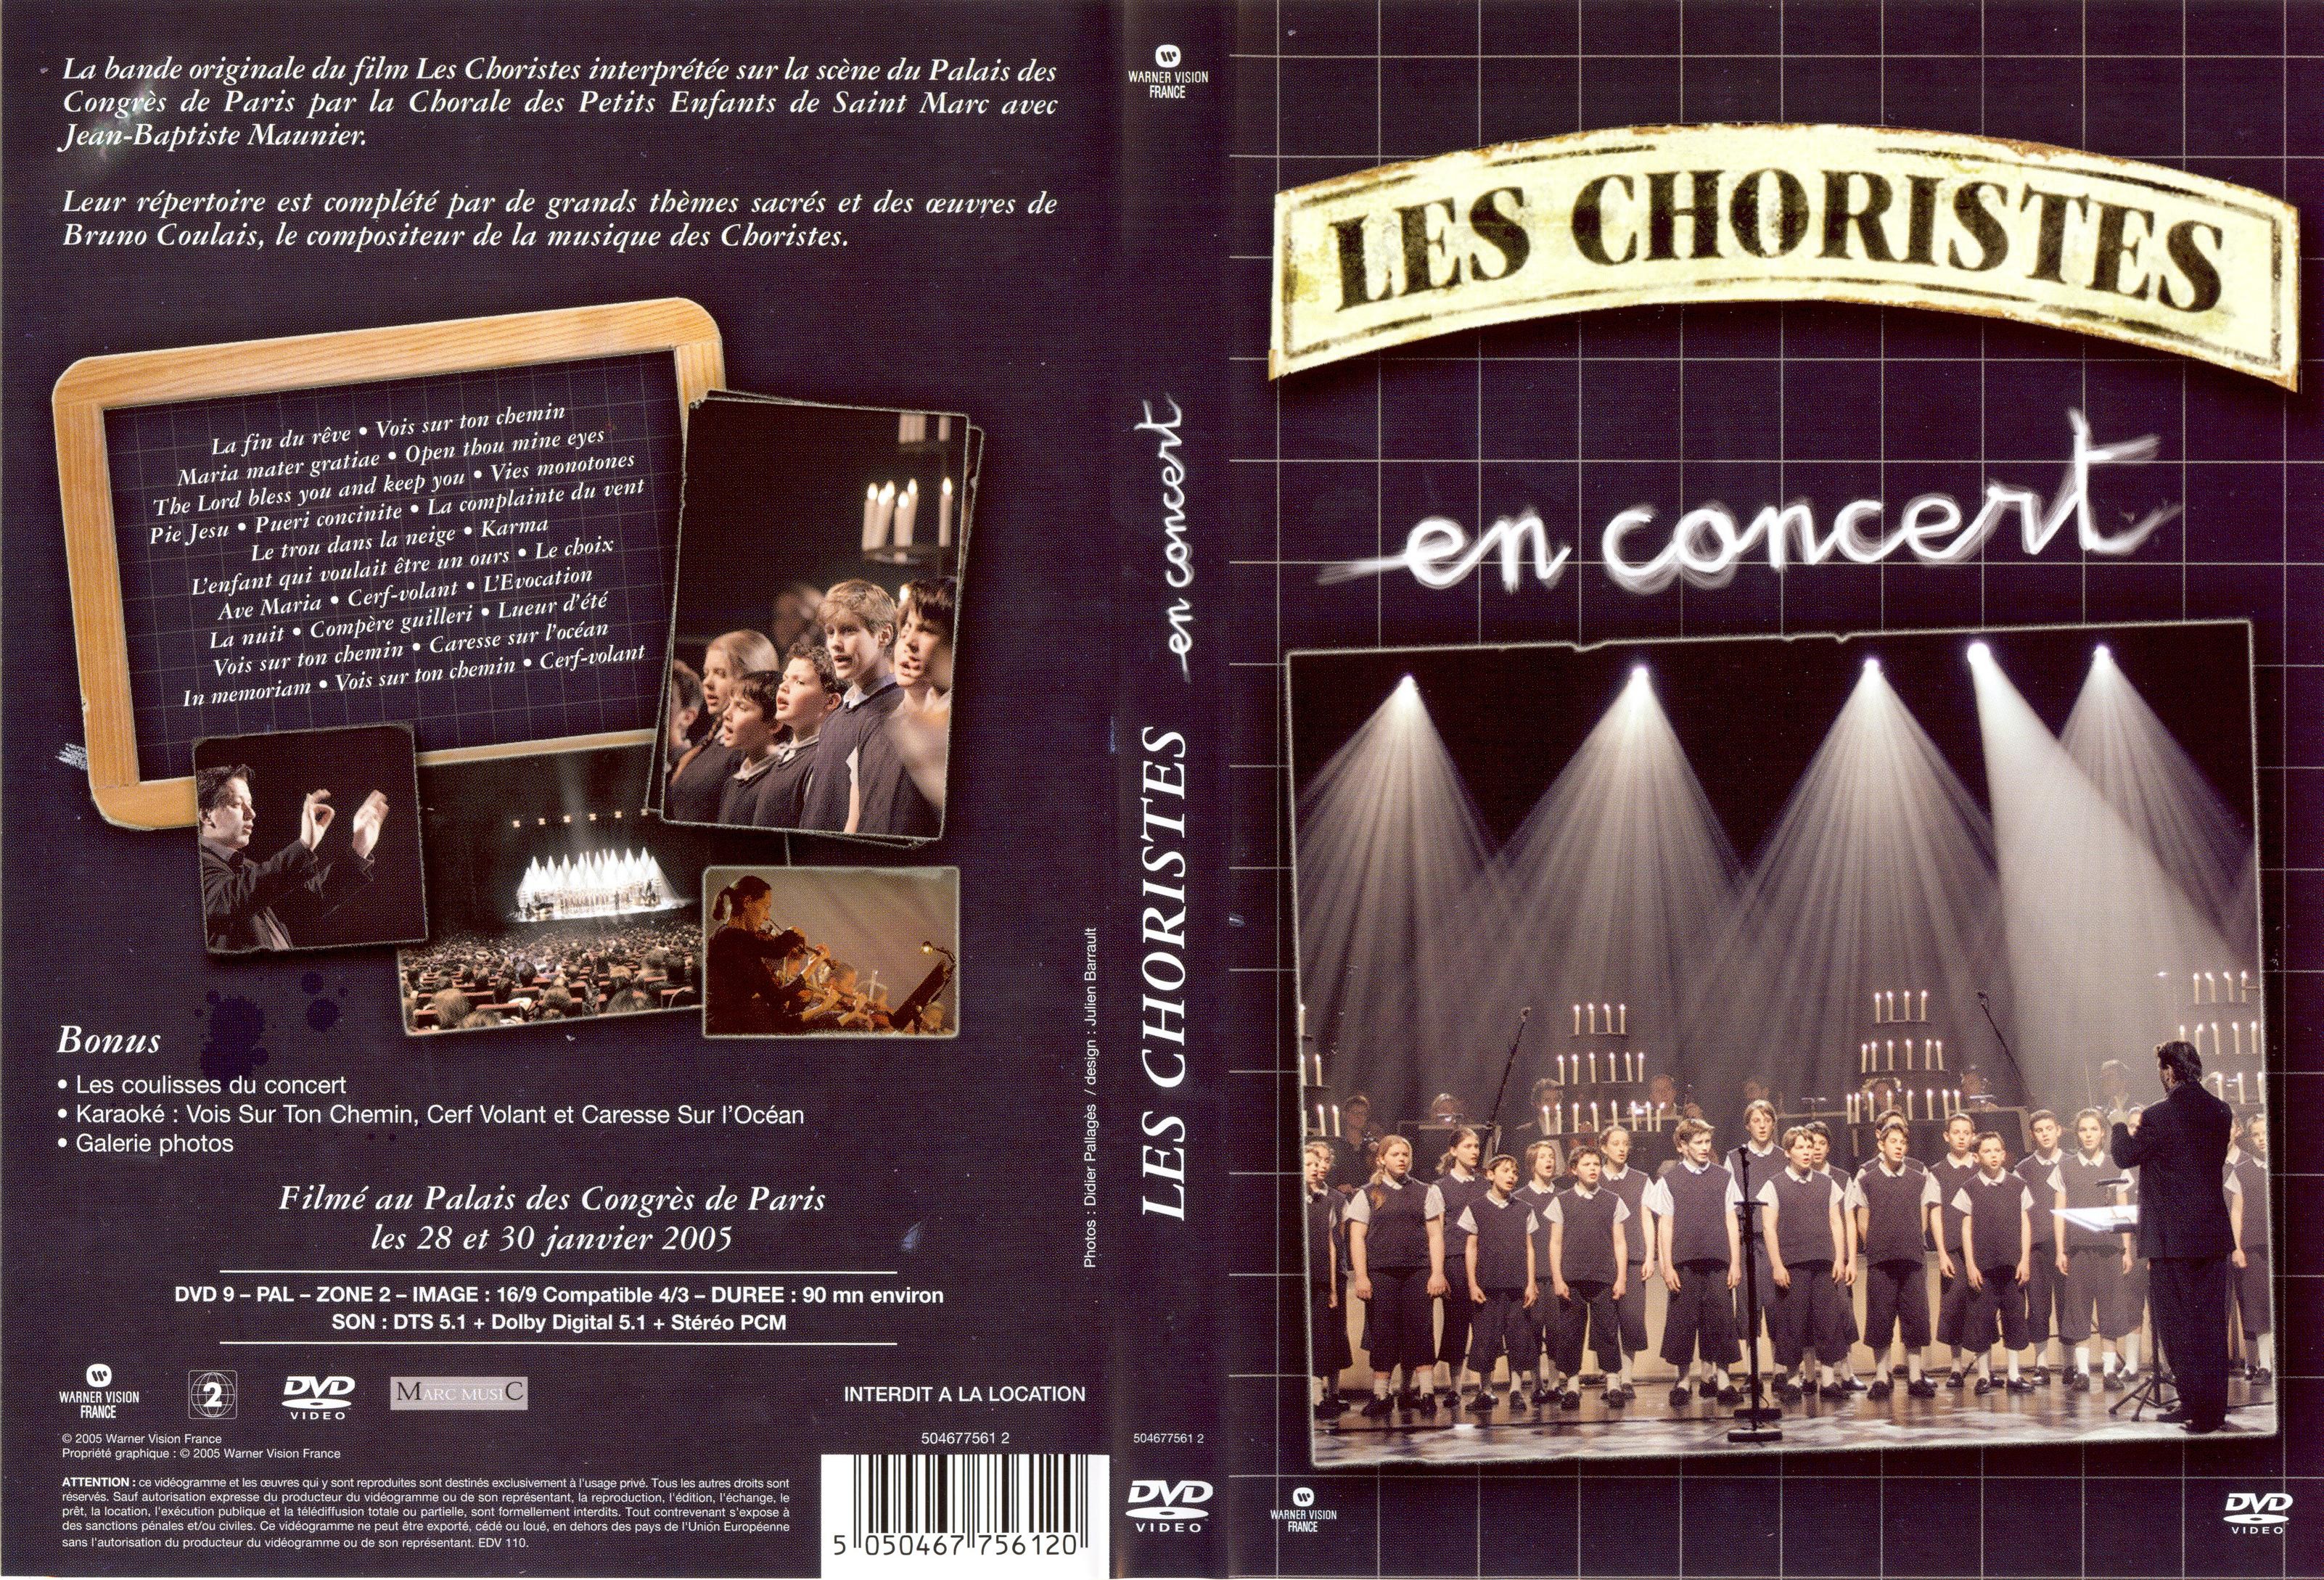 Jaquette DVD de Les choristes en concert - Cinéma Passion